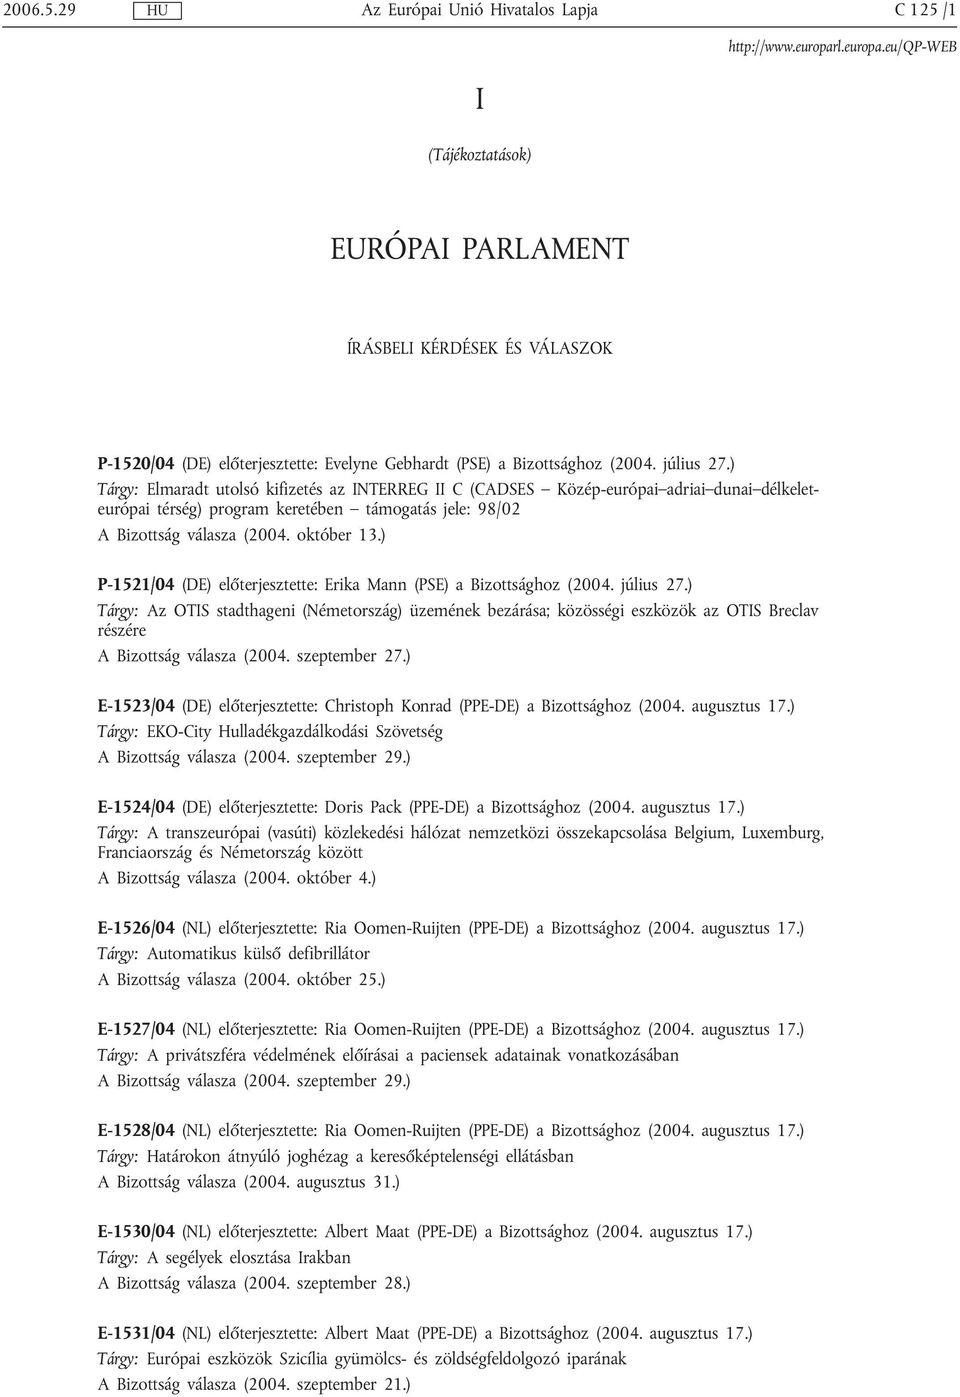 ) P-1521/04 (DE) előterjesztette: Erika Mann (PSE) a Bizottsághoz (2004. július 27.